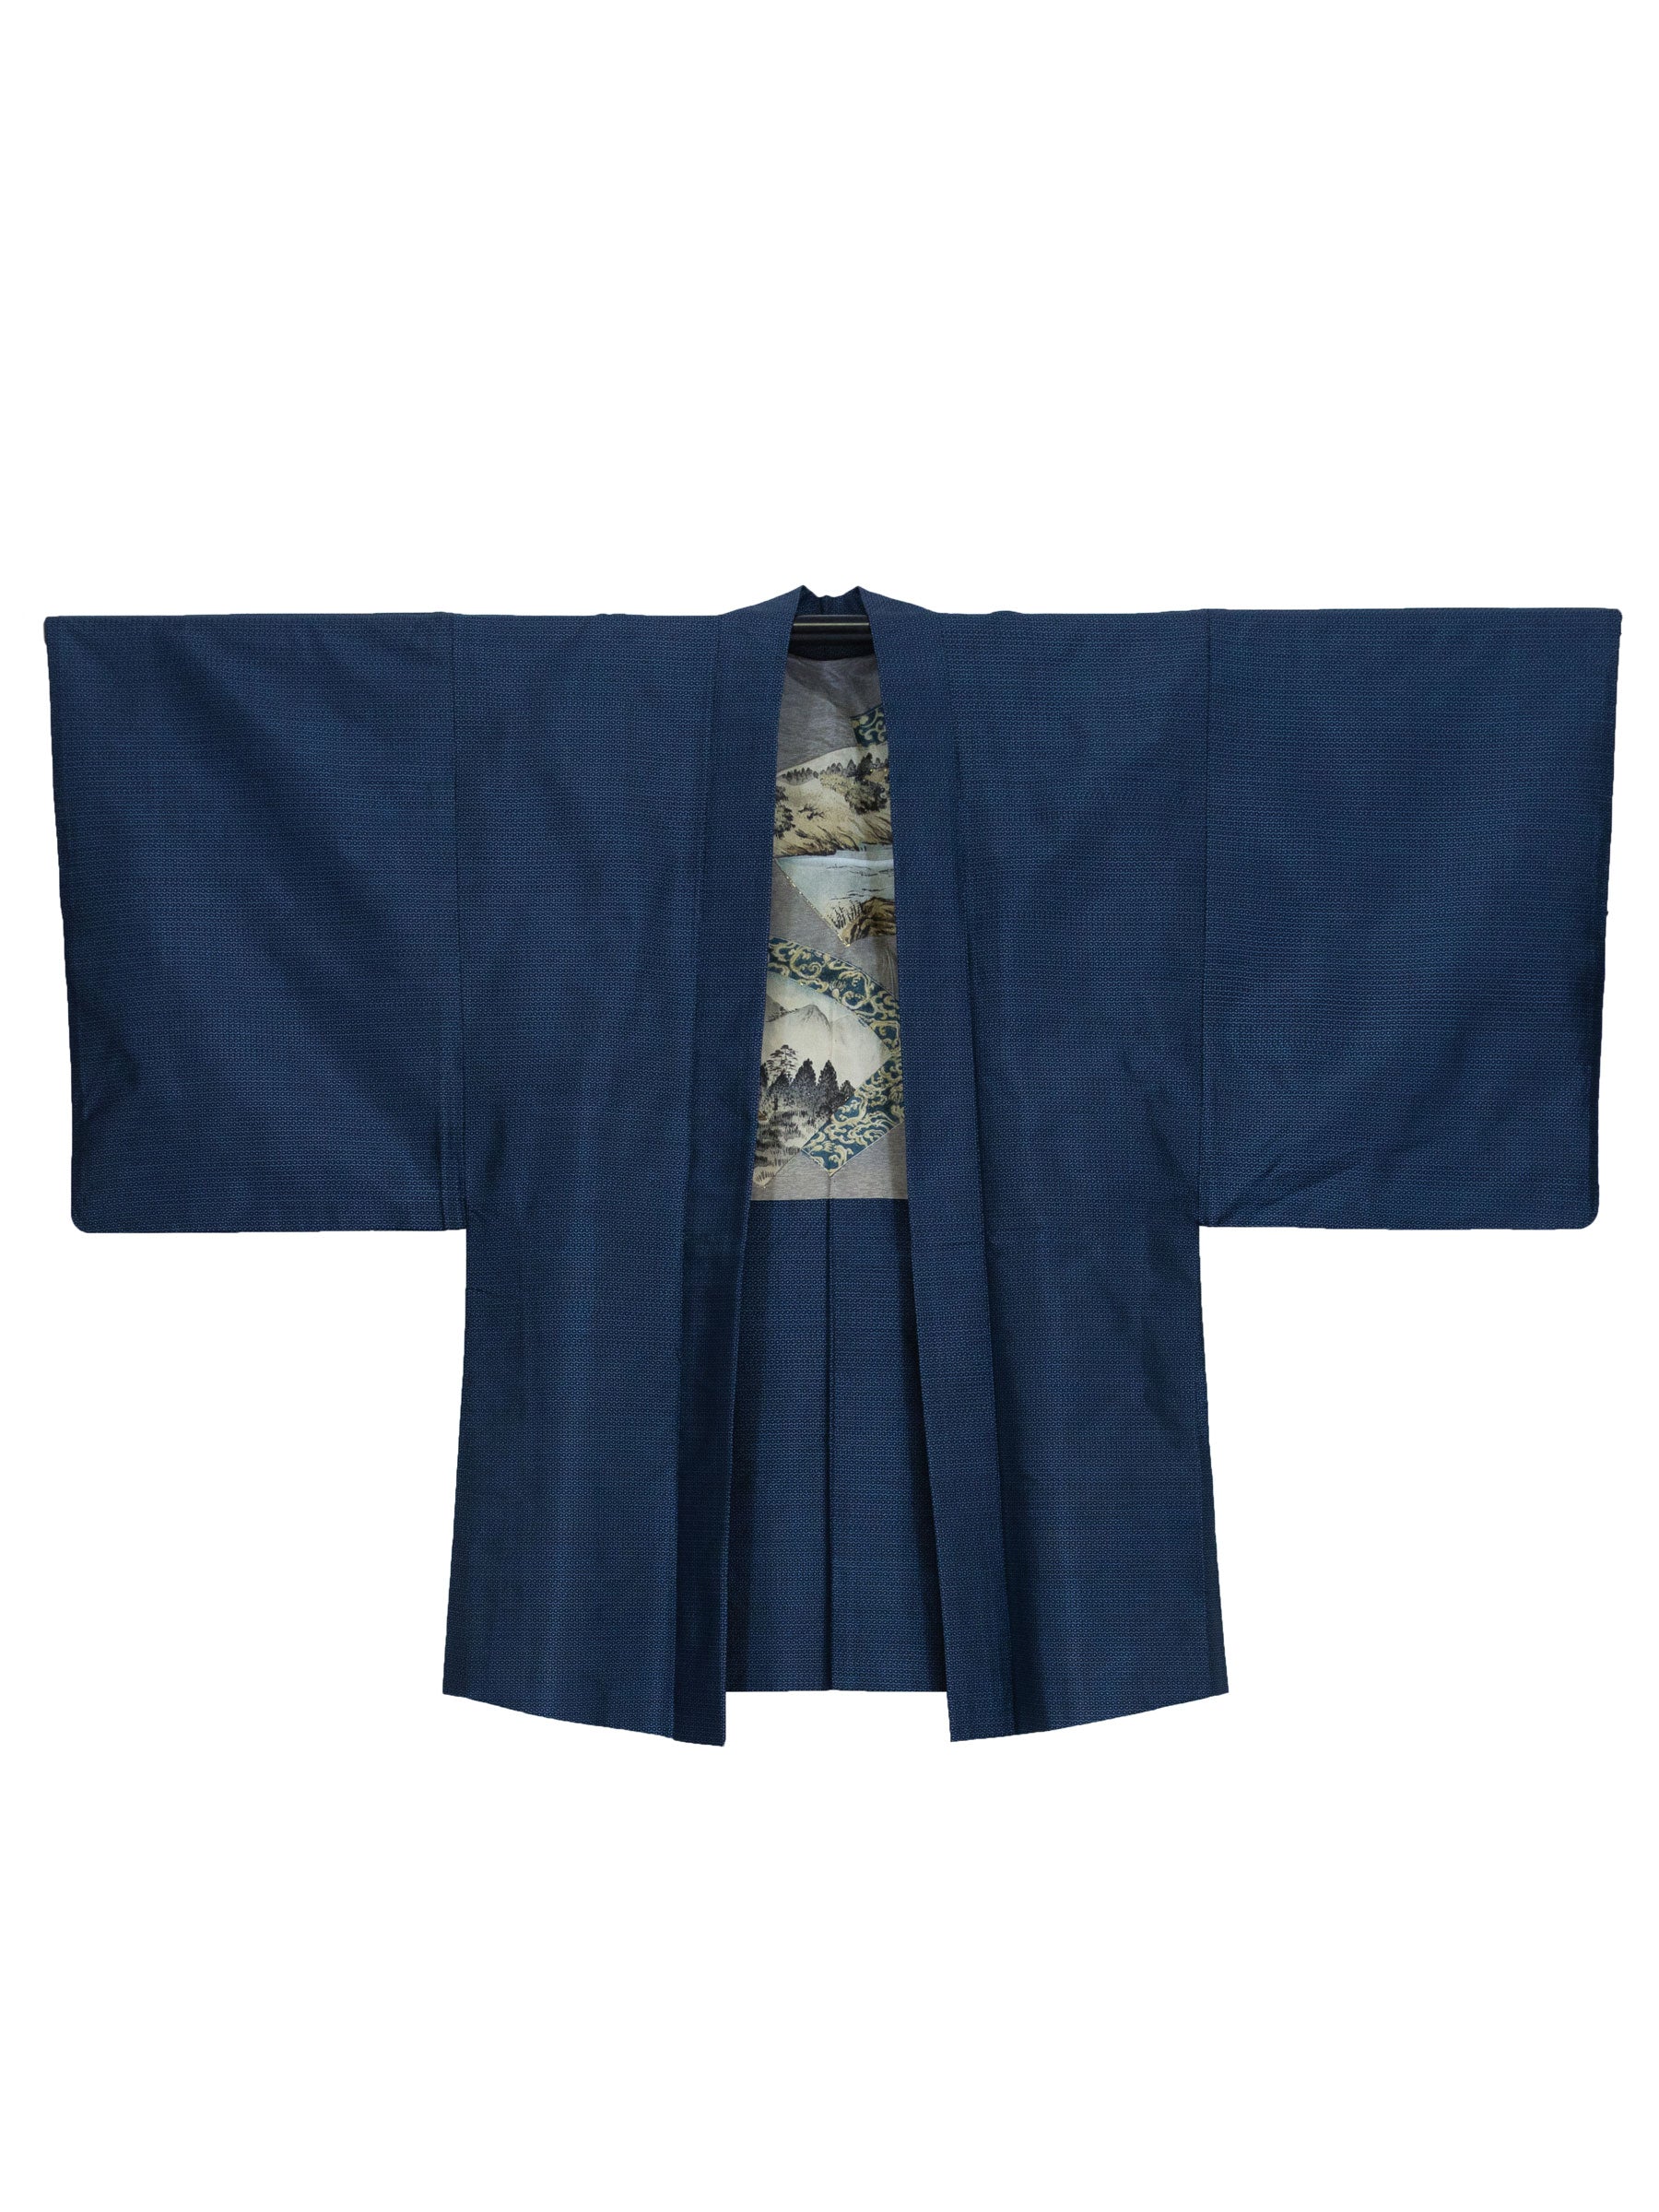 Vintage Jinsei Men's Haori Jacket | Japan Objects Store